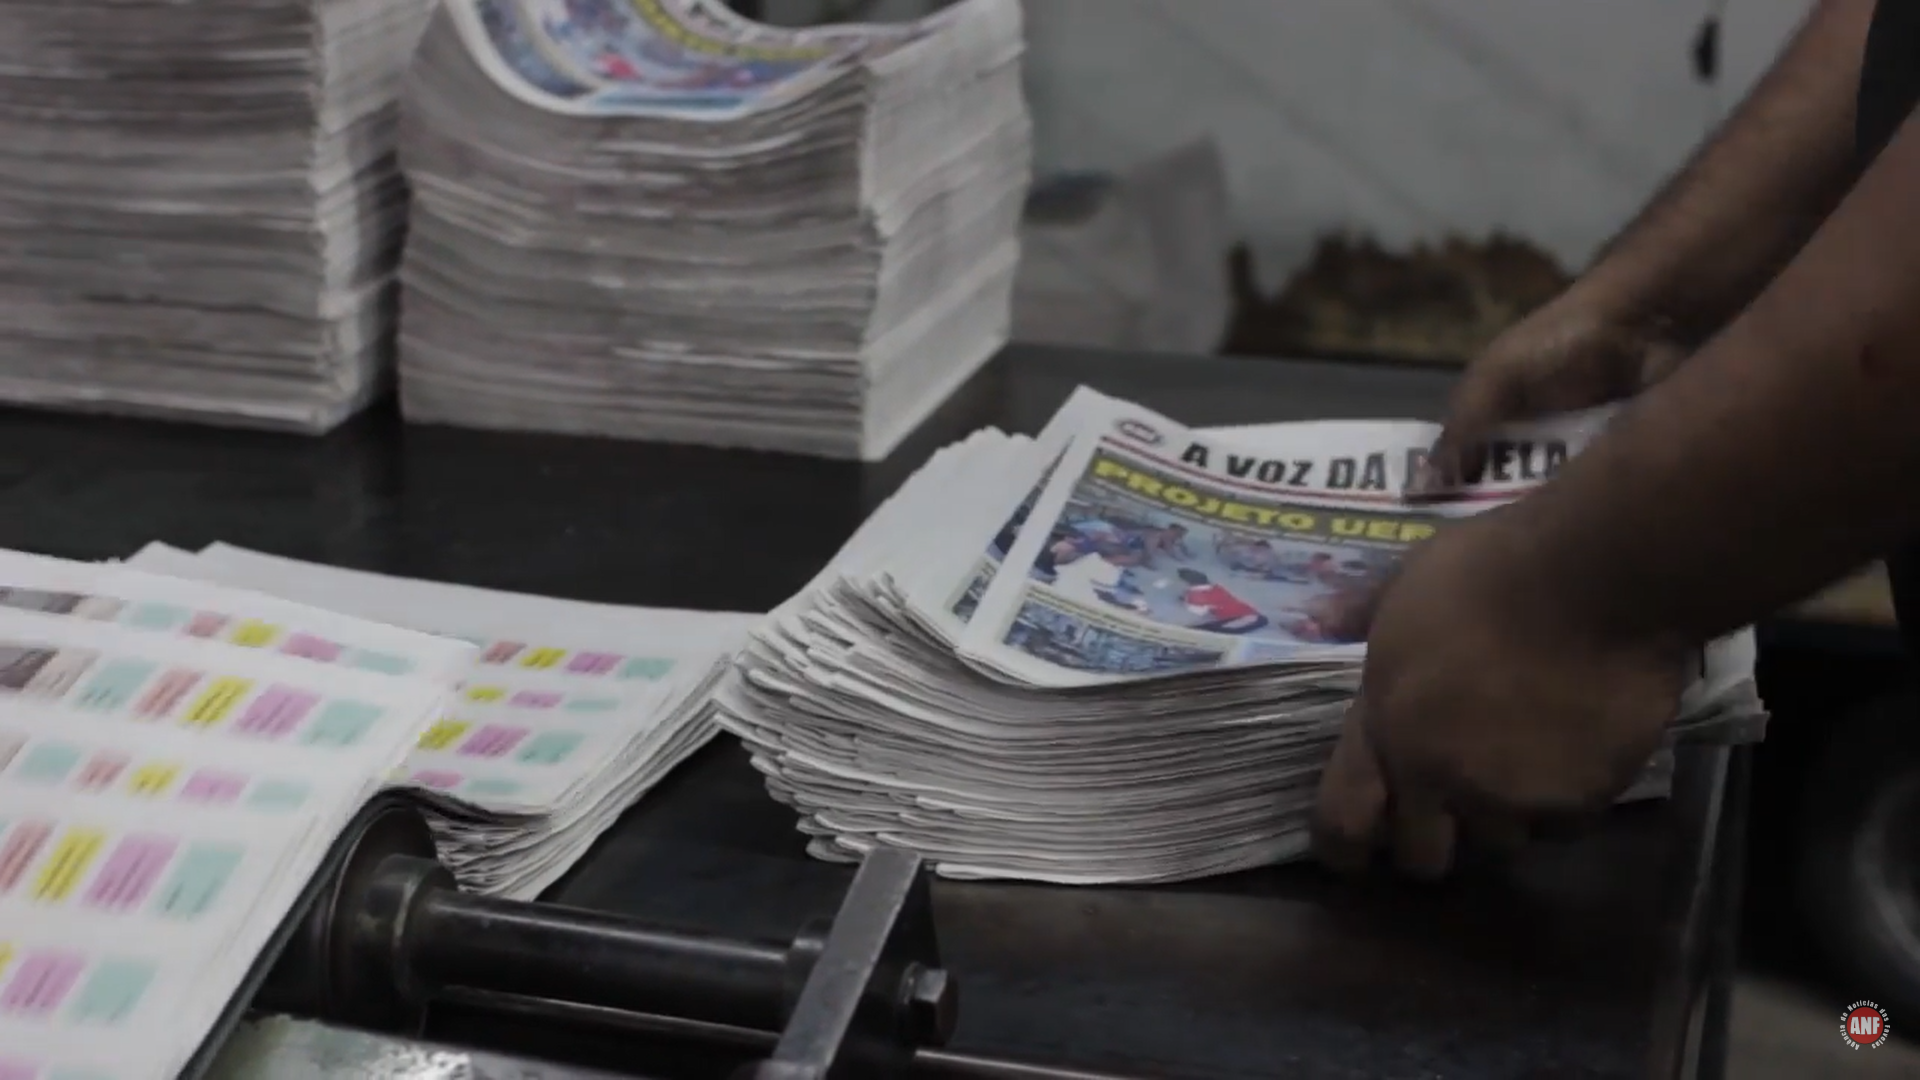 Jornal Impresso A Voz Da Favela